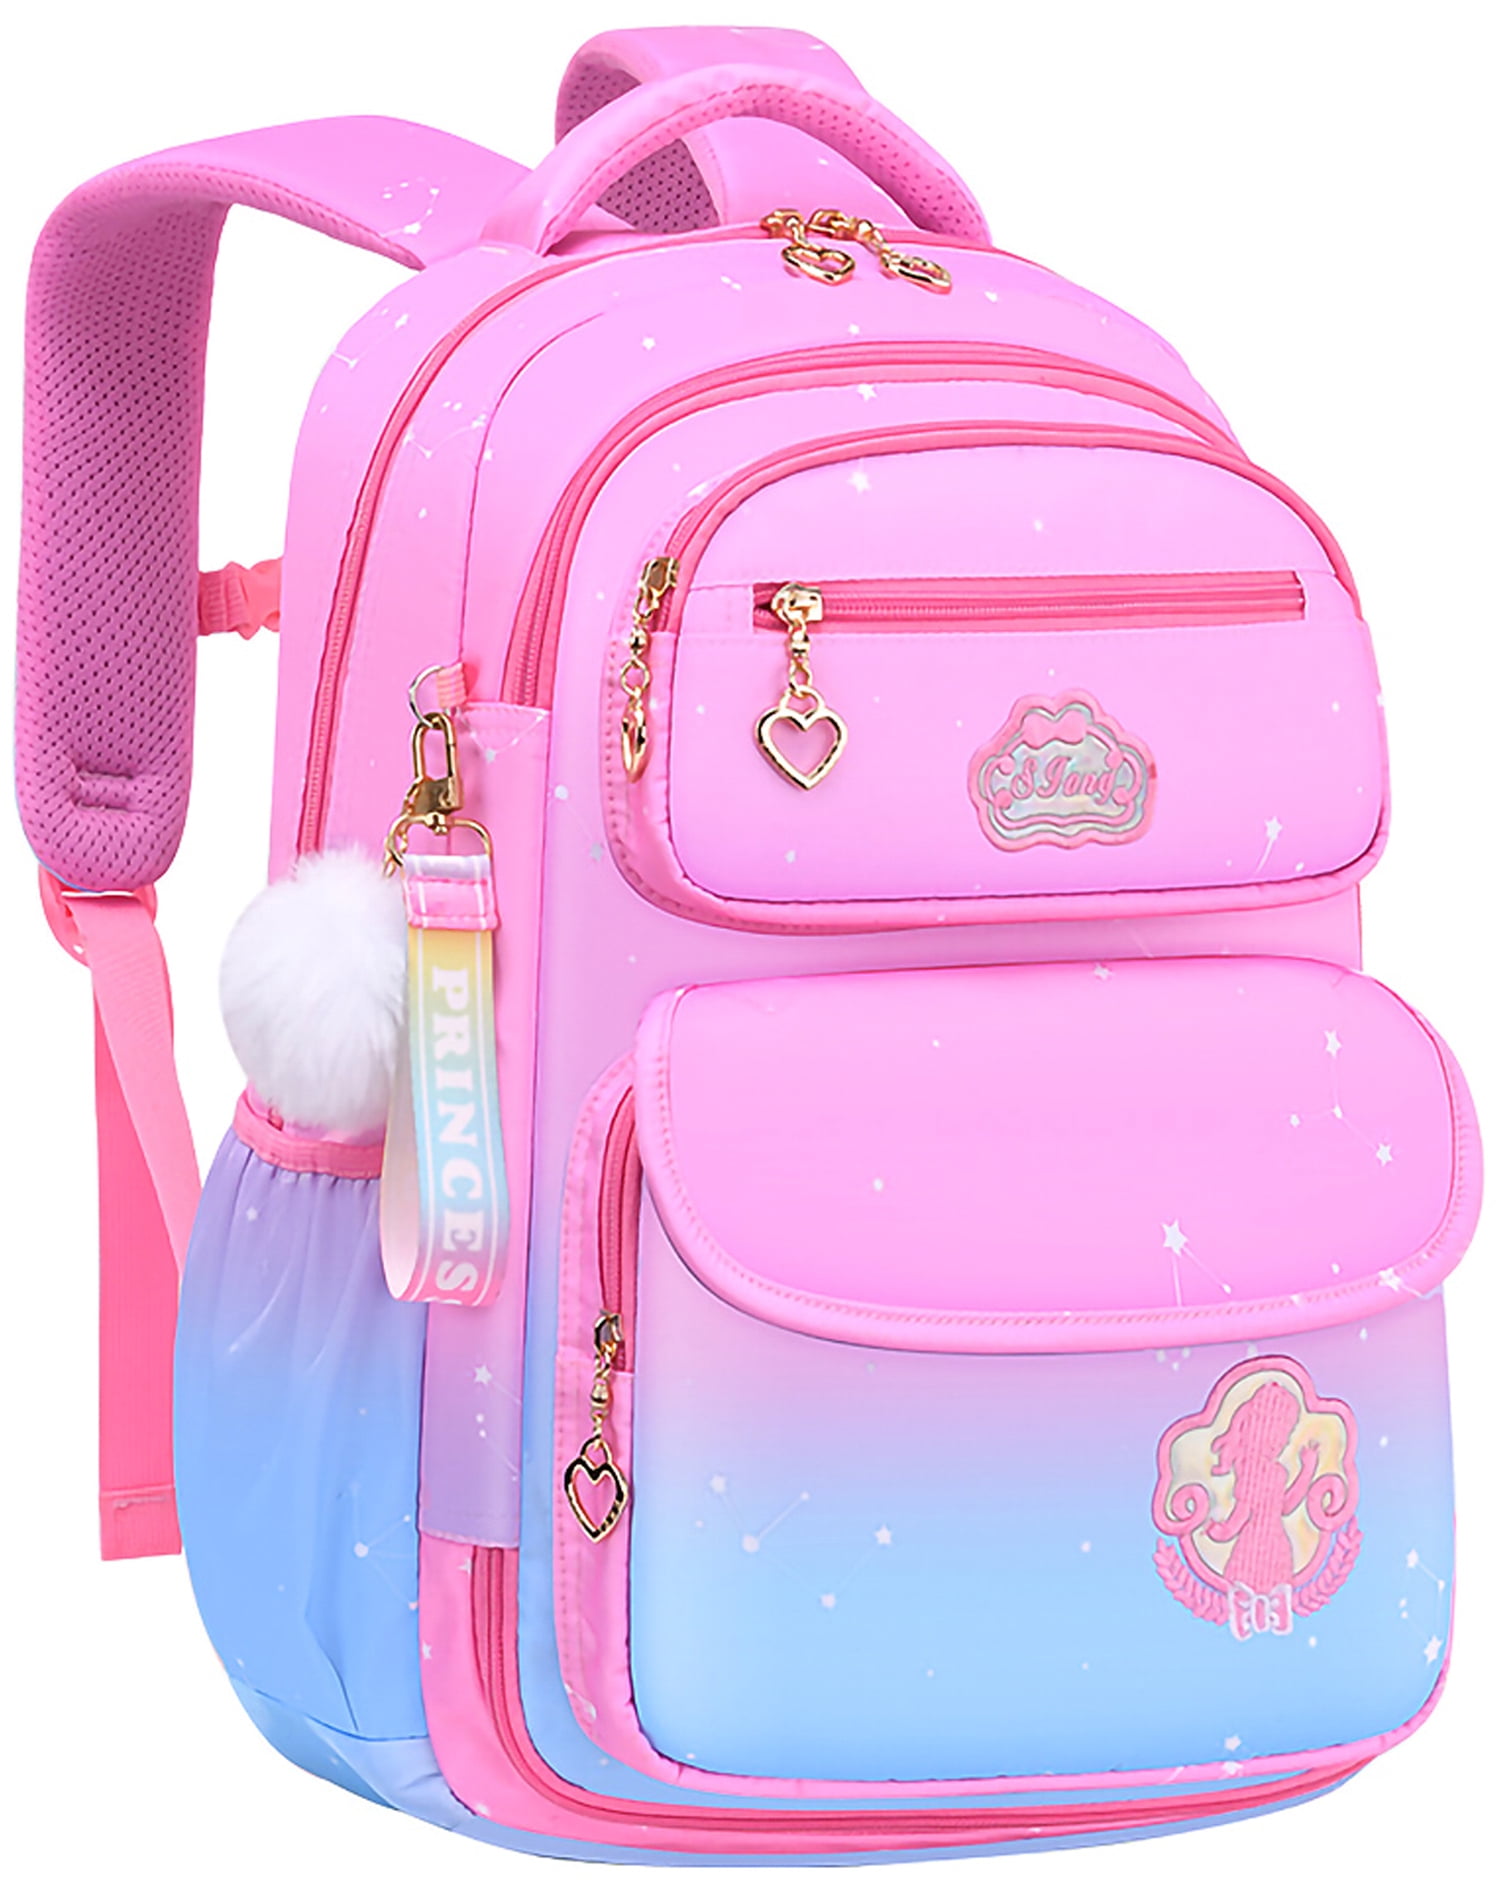 Unbranded Cute School Bags For Teenage Girls School Backpack India | Ubuy